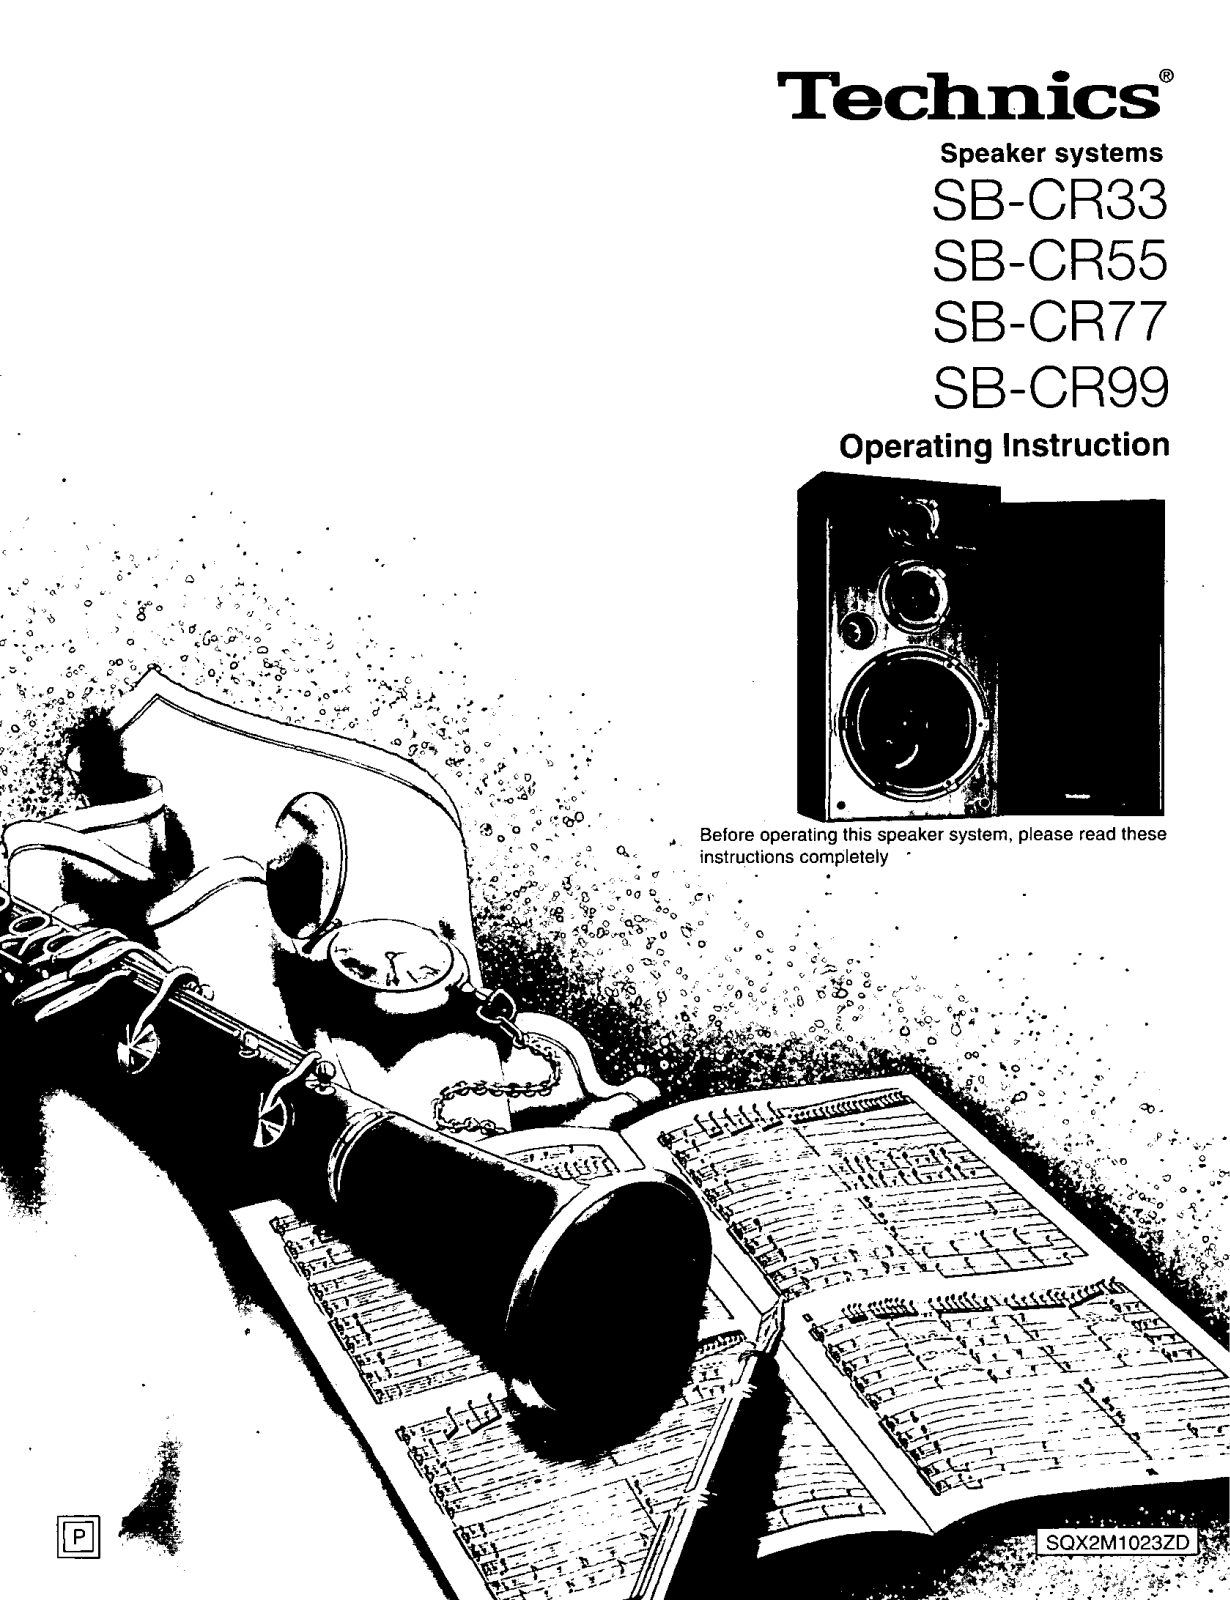 Panasonic SB-CR99, SB-CR77, SB-CR55 User Manual